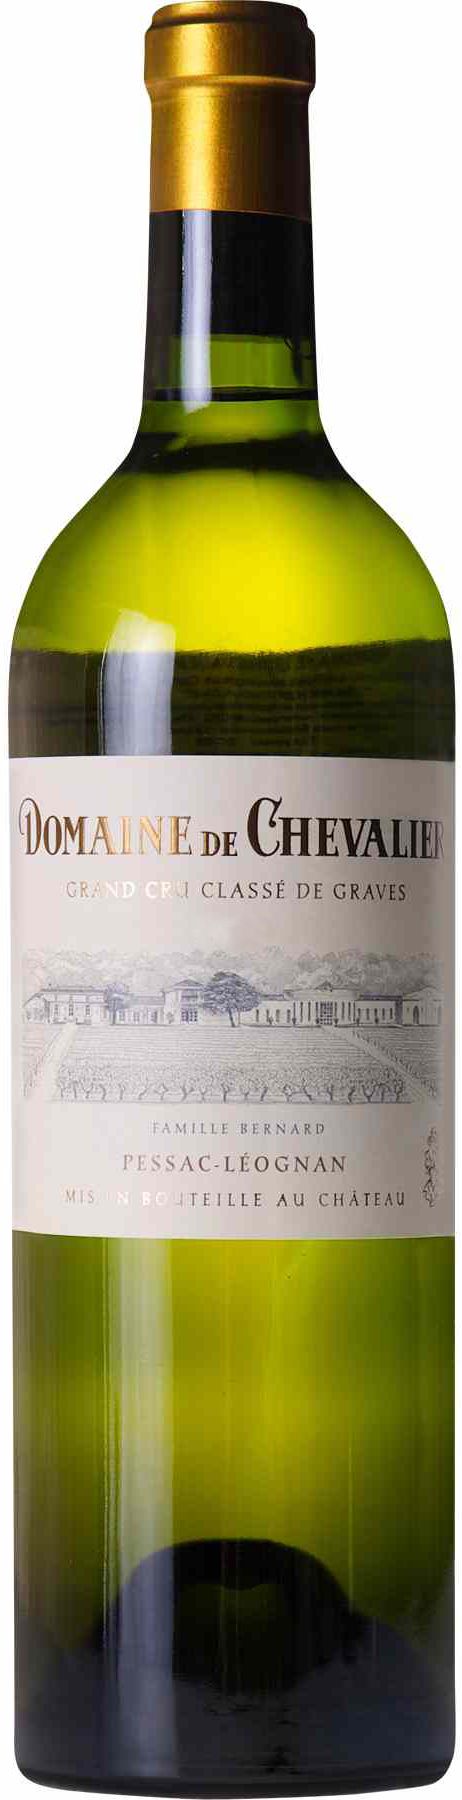 Domaine De Chevalier, Blanc, 2007